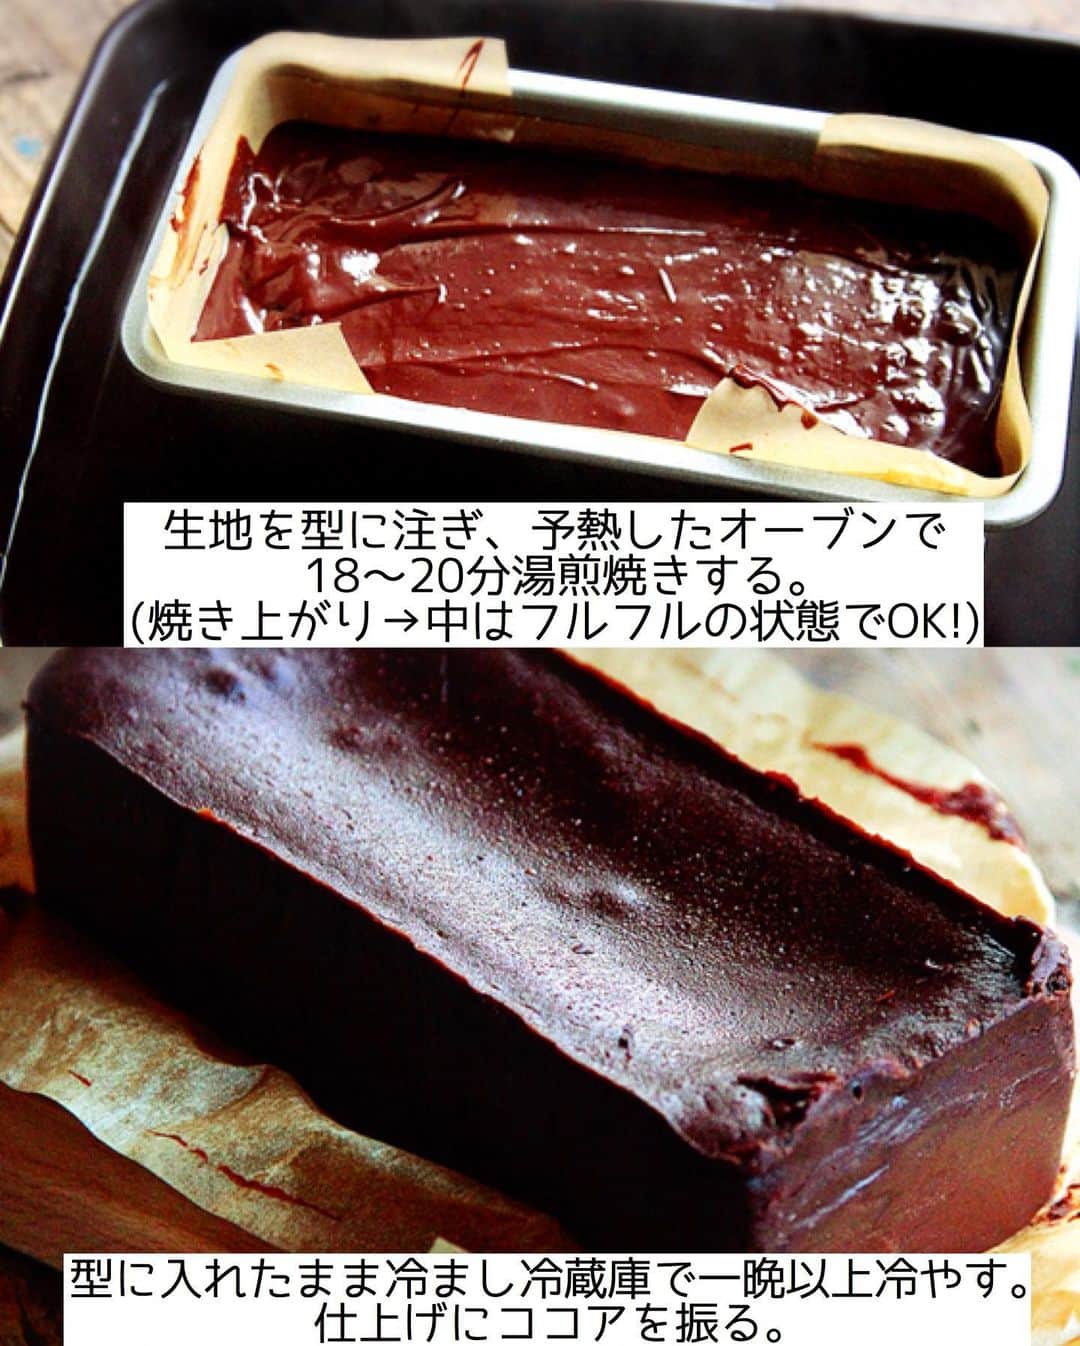 Mizuki【料理ブロガー・簡単レシピ】さんのインスタグラム写真 - (Mizuki【料理ブロガー・簡単レシピ】Instagram)「・﻿ 【#レシピ 】ーーーーーーー﻿ チョコ好きさんに捧ぐ！﻿ ♡超濃厚チョコテリーヌ♡﻿ ーーーーーーーーーーーーー﻿ ﻿ ﻿ ﻿ おはようございます(*^^*)﻿ ﻿ 今日は私のとっておきスイーツ﻿ \\チョコテリーヌ// ﻿ をご紹介させていただきます♩﻿ ﻿ 濃厚なチョコレート生地を﻿ しっとり焼き上げたチョコテリーヌ！﻿ 上質で香り高くとろける食感は﻿ まさに高級スイーツ♡﻿ ﻿ なのに作り方は超簡単(*´艸`)﻿ 生地はどんどん混ぜるだけ！！﻿ 材料は少なく工程も単純で﻿ 焼き時間も短いですよ〜♡﻿ ﻿ 冷蔵5日程保存できるので﻿ クリスマスやお正月にも﻿ よかったらお試し下さいね(*^^*)﻿ ﻿ ﻿ ﻿ ＿＿＿＿＿＿＿＿＿＿＿＿＿＿＿＿＿＿＿＿﻿ 【18cmパウンド型1台分】﻿ チョコレート(ブラック)...200g﻿ 無塩バター...100g﻿ 砂糖...大2﻿ 卵...3個﻿ 生クリーム...50ml﻿ ココアパウダー...適量﻿ ﻿ ﻿ (準備)型にクッキングシートを敷く。チョコとバターは細かく切る。卵は溶きほぐす。湯煎用・湯煎焼き用のお湯を沸かす。オーブンを180度に予熱する。﻿ ﻿ 1.チョコとバターをボウルに入れ、湯煎にかけて溶かす。﻿ 2. (湯煎にかけたまま)砂糖を加えて混ぜ、続けて溶き卵を少しずつ加え、その都度よく混ぜる。最後に生クリームも加えて混ぜる。﻿ 3. 生地を型に注ぎ、熱湯を注いだバット(天板)に乗せ、予熱したオーブンで18〜20分湯煎焼きする。(焼き上がり→中はフルフルの状態でOK!)﻿ 4.型に入れたまま冷まし、冷蔵庫で一晩以上しっかり冷やし、仕上げにココアを振る。﻿ ￣￣￣￣￣￣￣￣￣￣￣￣￣￣￣￣￣￣￣￣﻿ ﻿ ﻿ ﻿ 《ポイント》﻿ ♦︎チョコとバターは軽くレンチンしてから湯煎にかけると早く溶けます♩﻿ ♦︎生地作りは終始湯煎にかけたまま行って下さい♩﻿ ♦︎焼き上がりは中がフルフルの状態です！固まる程焼いてしまうと焼き過ぎなので注意して下さいね☆﻿ ♦︎一晩以上しっかり冷やして下さい♩冷蔵庫で5日は保存できますよ♩﻿ ♦︎ナイフを温めると綺麗に切れる&断面がとろけて美味しそうに♩﻿ ﻿ ﻿ ﻿ ﻿ ﻿ ﻿ ﻿ ﻿ 📕新刊発売中📕﻿ 【ラクしておいしい！#1品晩ごはん 】﻿ ￣￣￣￣￣￣￣￣￣￣￣￣￣￣￣￣￣﻿ 私たちだってヘトヘトな日がある•••﻿ 毎日何品も作っていられない•••﻿ もうごはんに悩みたくない😢﻿ そんな時、1品ごはんはいかがでしょう？﻿ というご提案です✨﻿ ﻿ 【1品ごはん】は﻿ 副菜いらずで全てがシンプル！﻿ ￣￣￣￣￣￣￣￣￣￣￣￣￣￣￣￣￣￣﻿ 一品つくるだけでいいから﻿ 献立を考えなくてよし！﻿ ￣￣￣￣￣￣￣￣￣￣￣￣￣￣￣￣￣￣﻿ 悩まない、疲れない、﻿ 気力や時間がなくてもなんとかなる！﻿ ￣￣￣￣￣￣￣￣￣￣￣￣￣￣￣￣￣￣﻿ そんな頼りになる﻿ 便利なお助けごはんです☺️💕﻿ (ハイライトに🔗貼っています✨)﻿ ￣￣￣￣￣￣￣￣￣￣￣￣￣￣￣￣￣﻿ ﻿ ﻿ ﻿ ﻿ ﻿ ⭐️発売中⭐️﻿ ＿＿＿＿＿＿＿＿＿＿＿＿＿＿＿＿＿＿﻿ しんどくない献立、考えました♩﻿ \15分でいただきます/﻿ 📕#Mizukiの2品献立 📕﻿ ﻿ 和食をもっとカジュアルに♩﻿ \毎日のごはんがラクになる/﻿ 📘#Mizukiの今どき和食 📘﻿ ﻿ ホケミレシピの決定版♩﻿ \はじめてでも失敗しない/﻿ 📙ホットケーキミックスのお菓子 📙﻿ ﻿ NHKまる得マガジンテキスト☆﻿ ホットケーキミックスで﻿ 📗絶品おやつ&意外なランチ📗﻿ ￣￣￣￣￣￣￣￣￣￣￣￣￣￣￣￣￣￣﻿ ﻿ ﻿ ﻿ ＿＿＿＿＿＿＿＿＿＿＿＿＿＿＿＿＿＿﻿ レシピを作って下さった際や﻿ レシピ本についてのご投稿には﻿ タグ付け( @mizuki_31cafe )して﻿ お知らせいただけると嬉しいです😊💕﻿ ￣￣￣￣￣￣￣￣￣￣￣￣￣￣￣￣￣￣﻿ ﻿ ﻿ ﻿ ﻿ #チョコレートケーキ#チョコテリーヌ#クリスマス#Mizuki#簡単レシピ#時短レシピ#節約レシピ#料理#フーディーテーブル#マカロニメイト#おうちごはん#デリスタグラマー#料理好きな人と繋がりたい#食べ物#料理記録#おうちごはんlover#写真好きな人と繋がりたい#foodpic#cooking#recipe#lin_stagrammer#foodporn#yummy#f52grams#チョコテリーヌm」12月23日 7時00分 - mizuki_31cafe